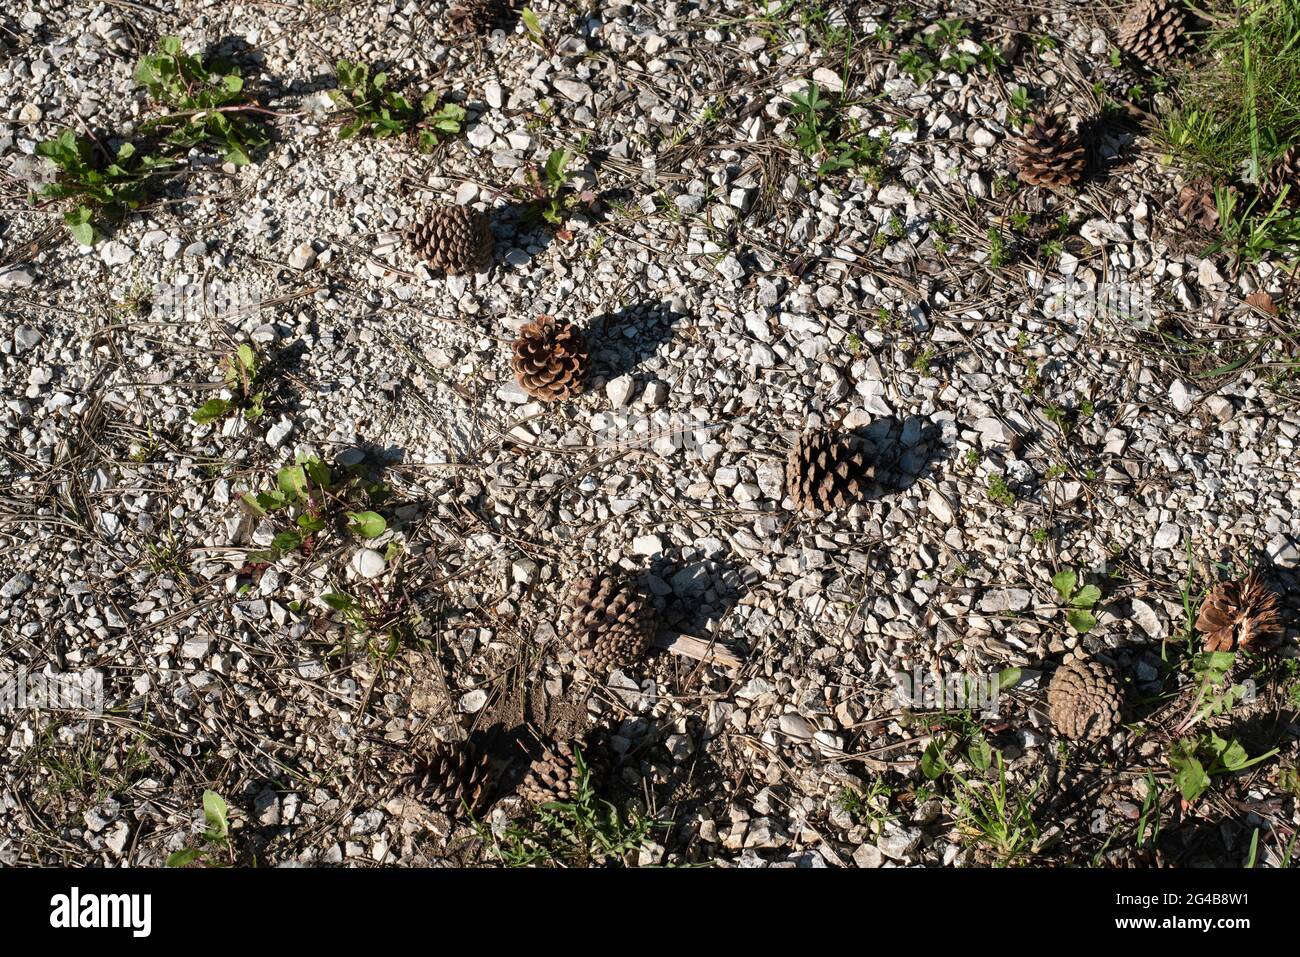 conos de pino caído bajo la luz del sol en un suelo con grava de piedra caliza Foto de stock